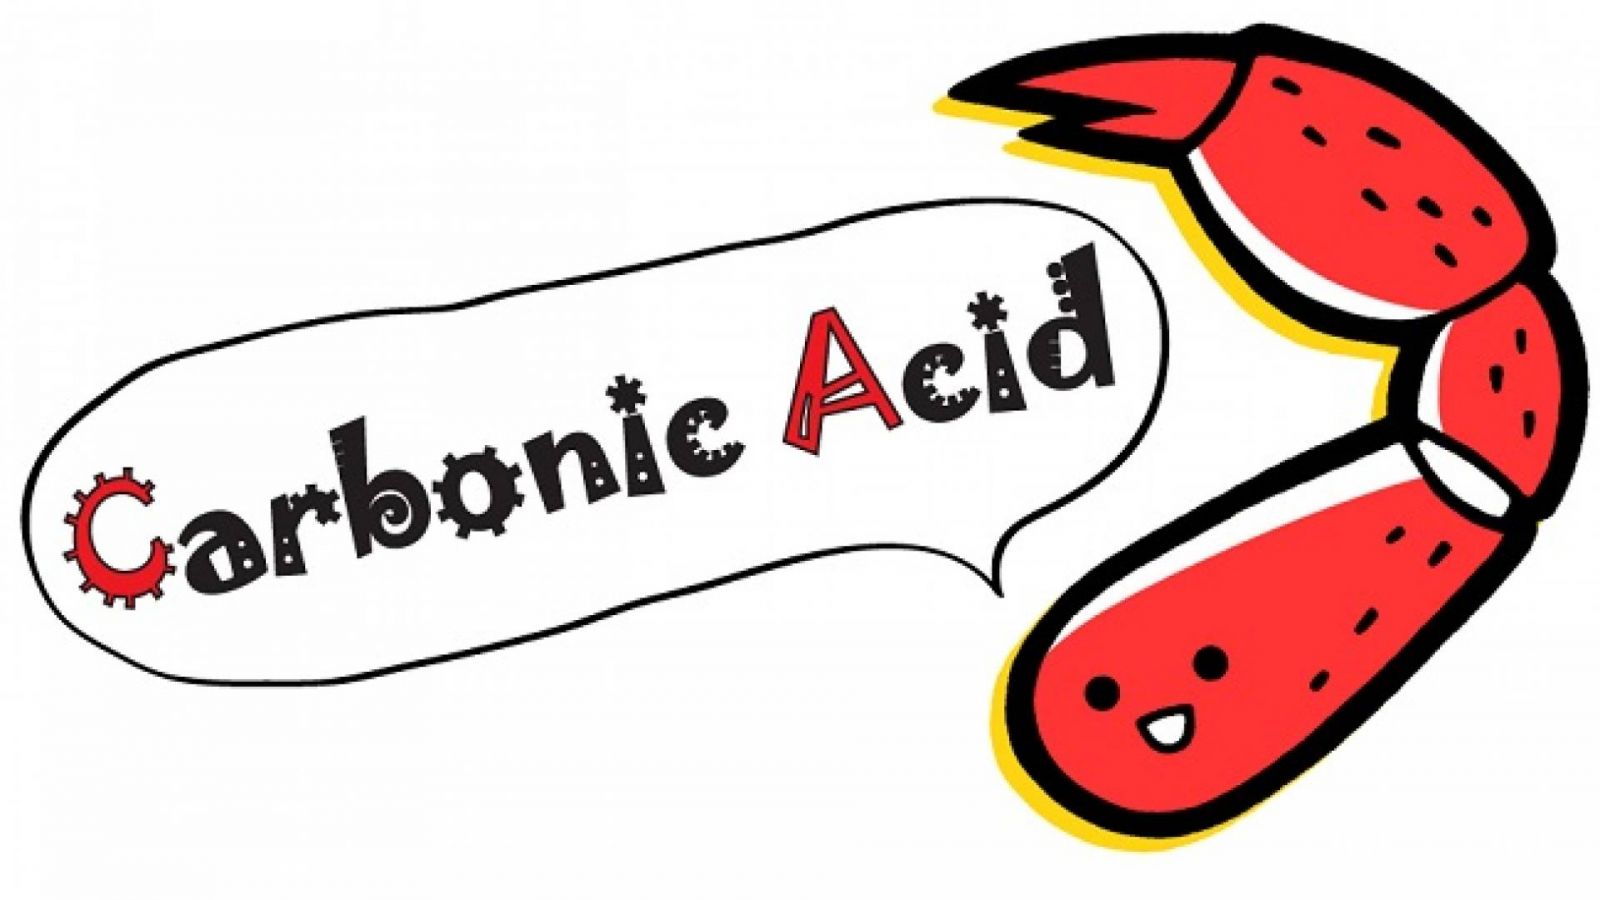 Carbonic Acid lanzará un nuevo álbum © Carbonic Acid